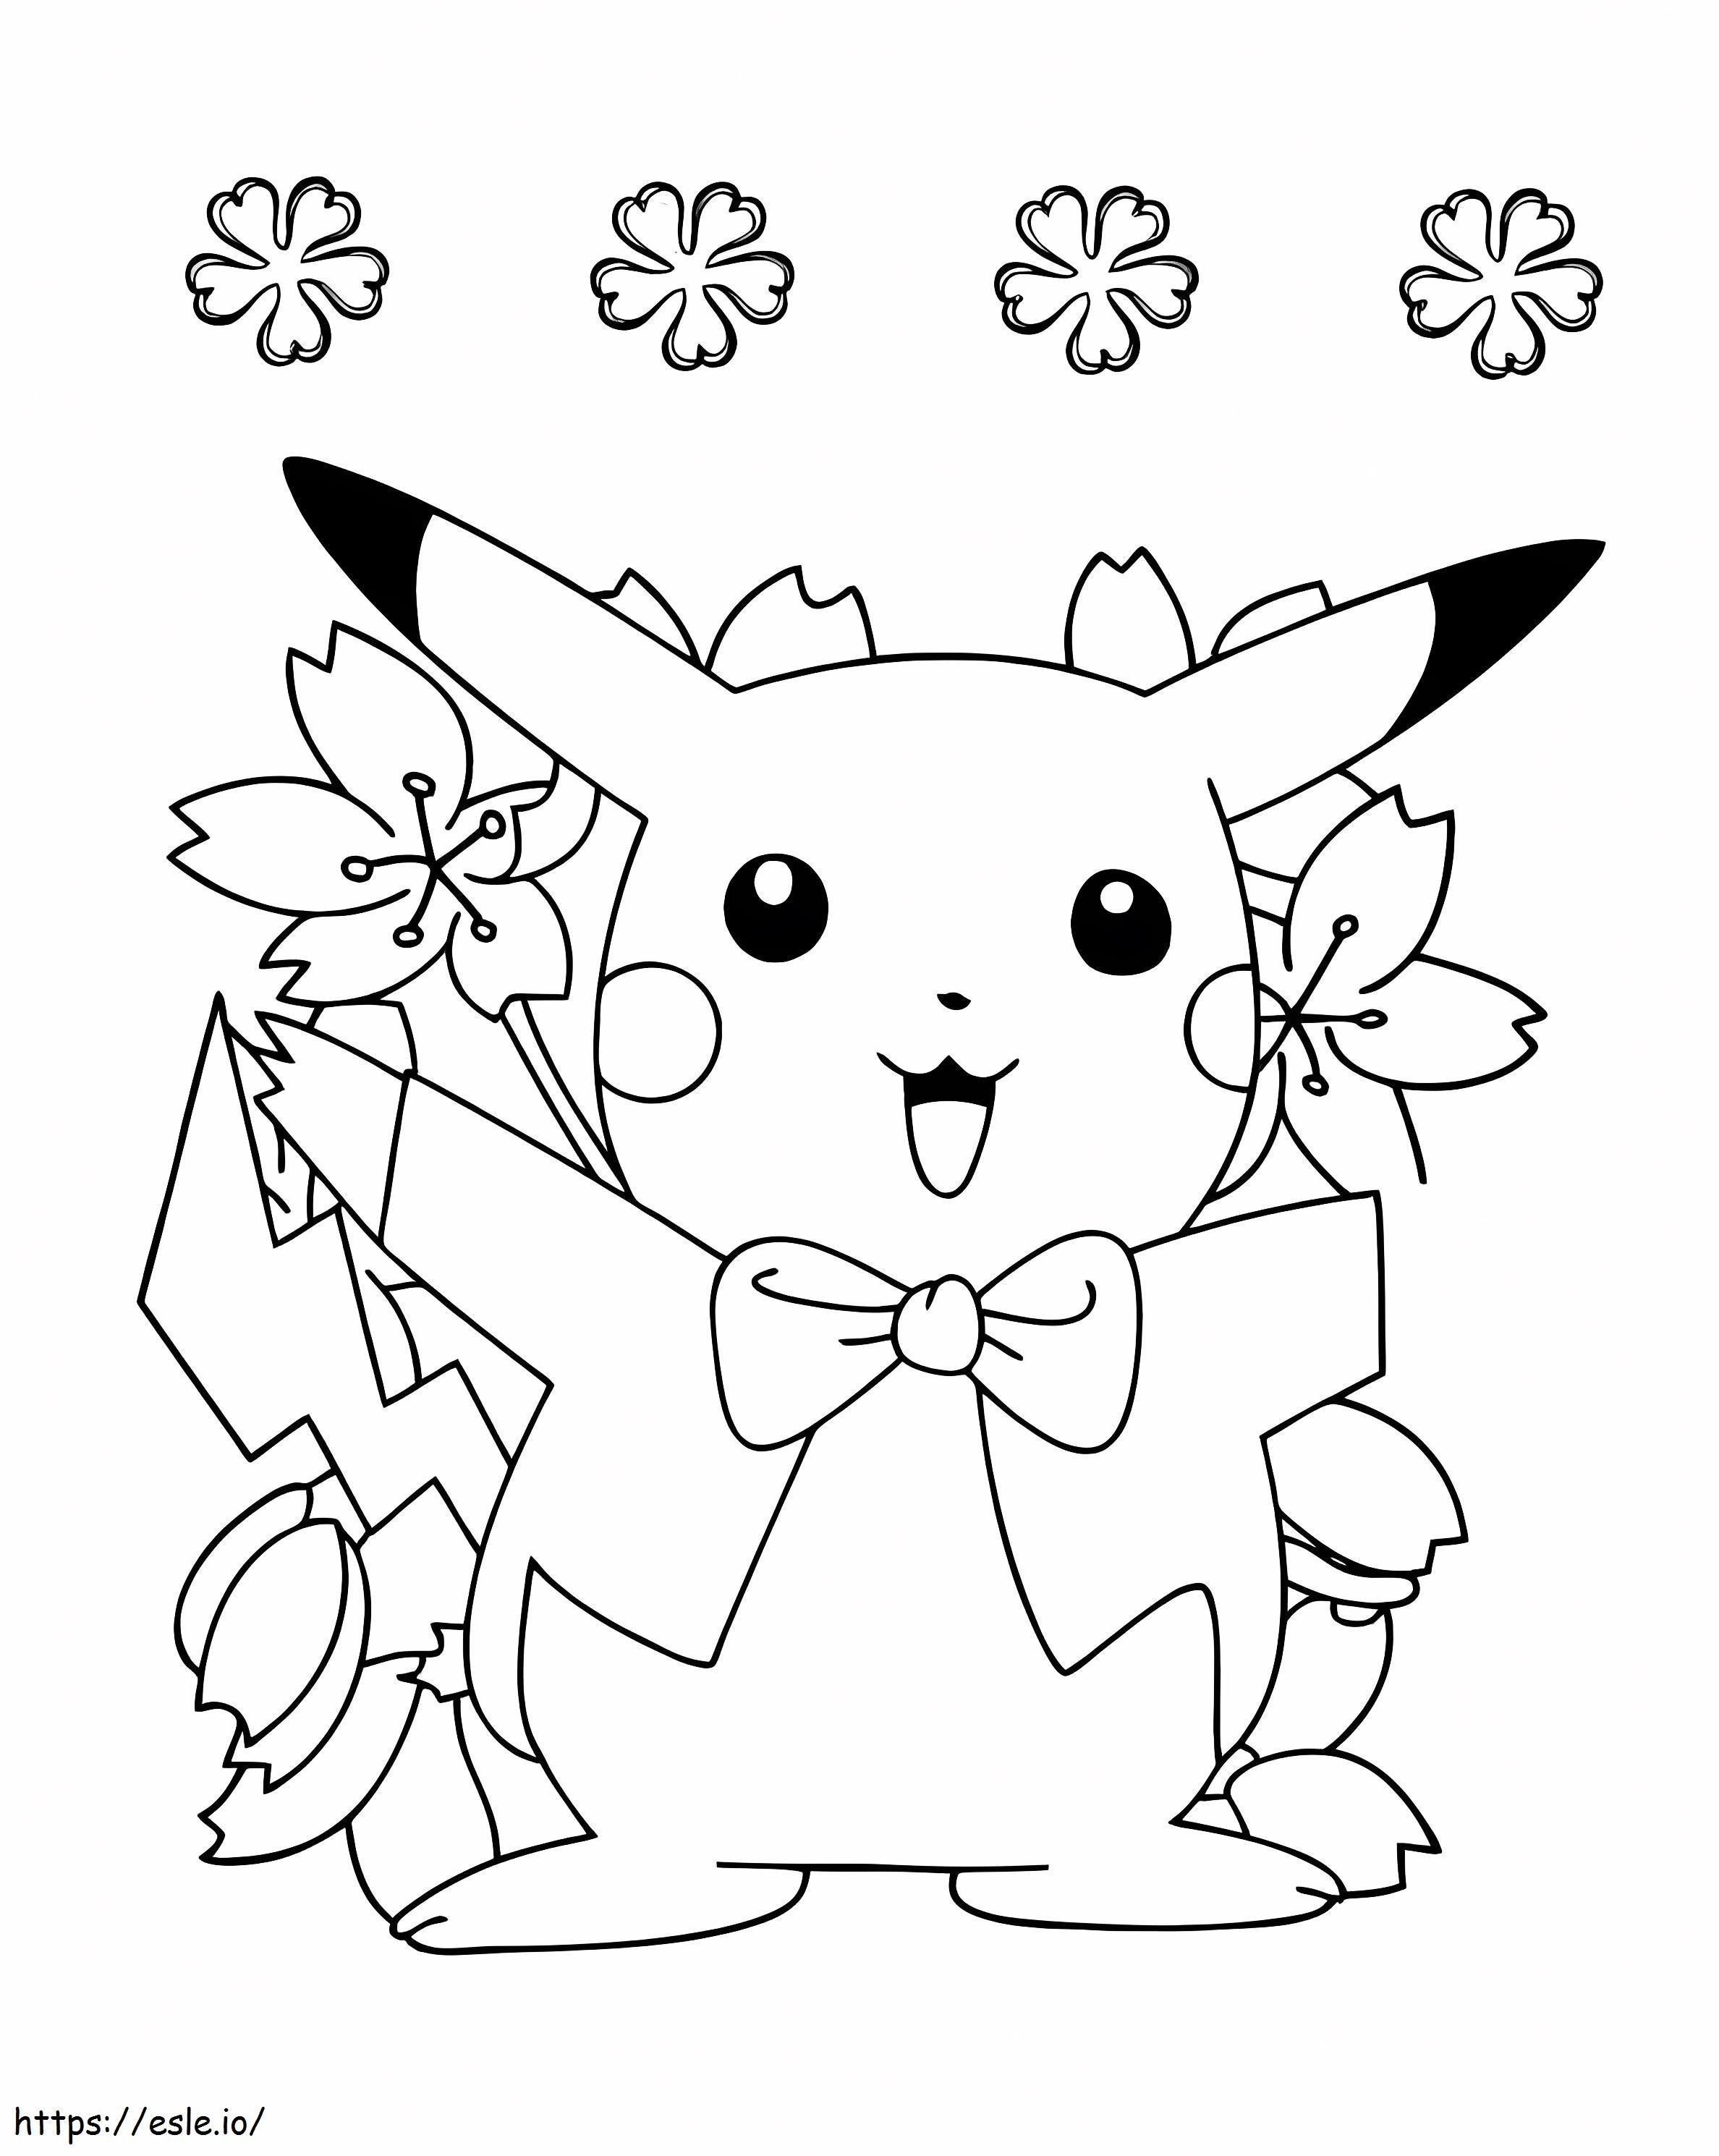 Coloriage Super Pikachu à imprimer dessin